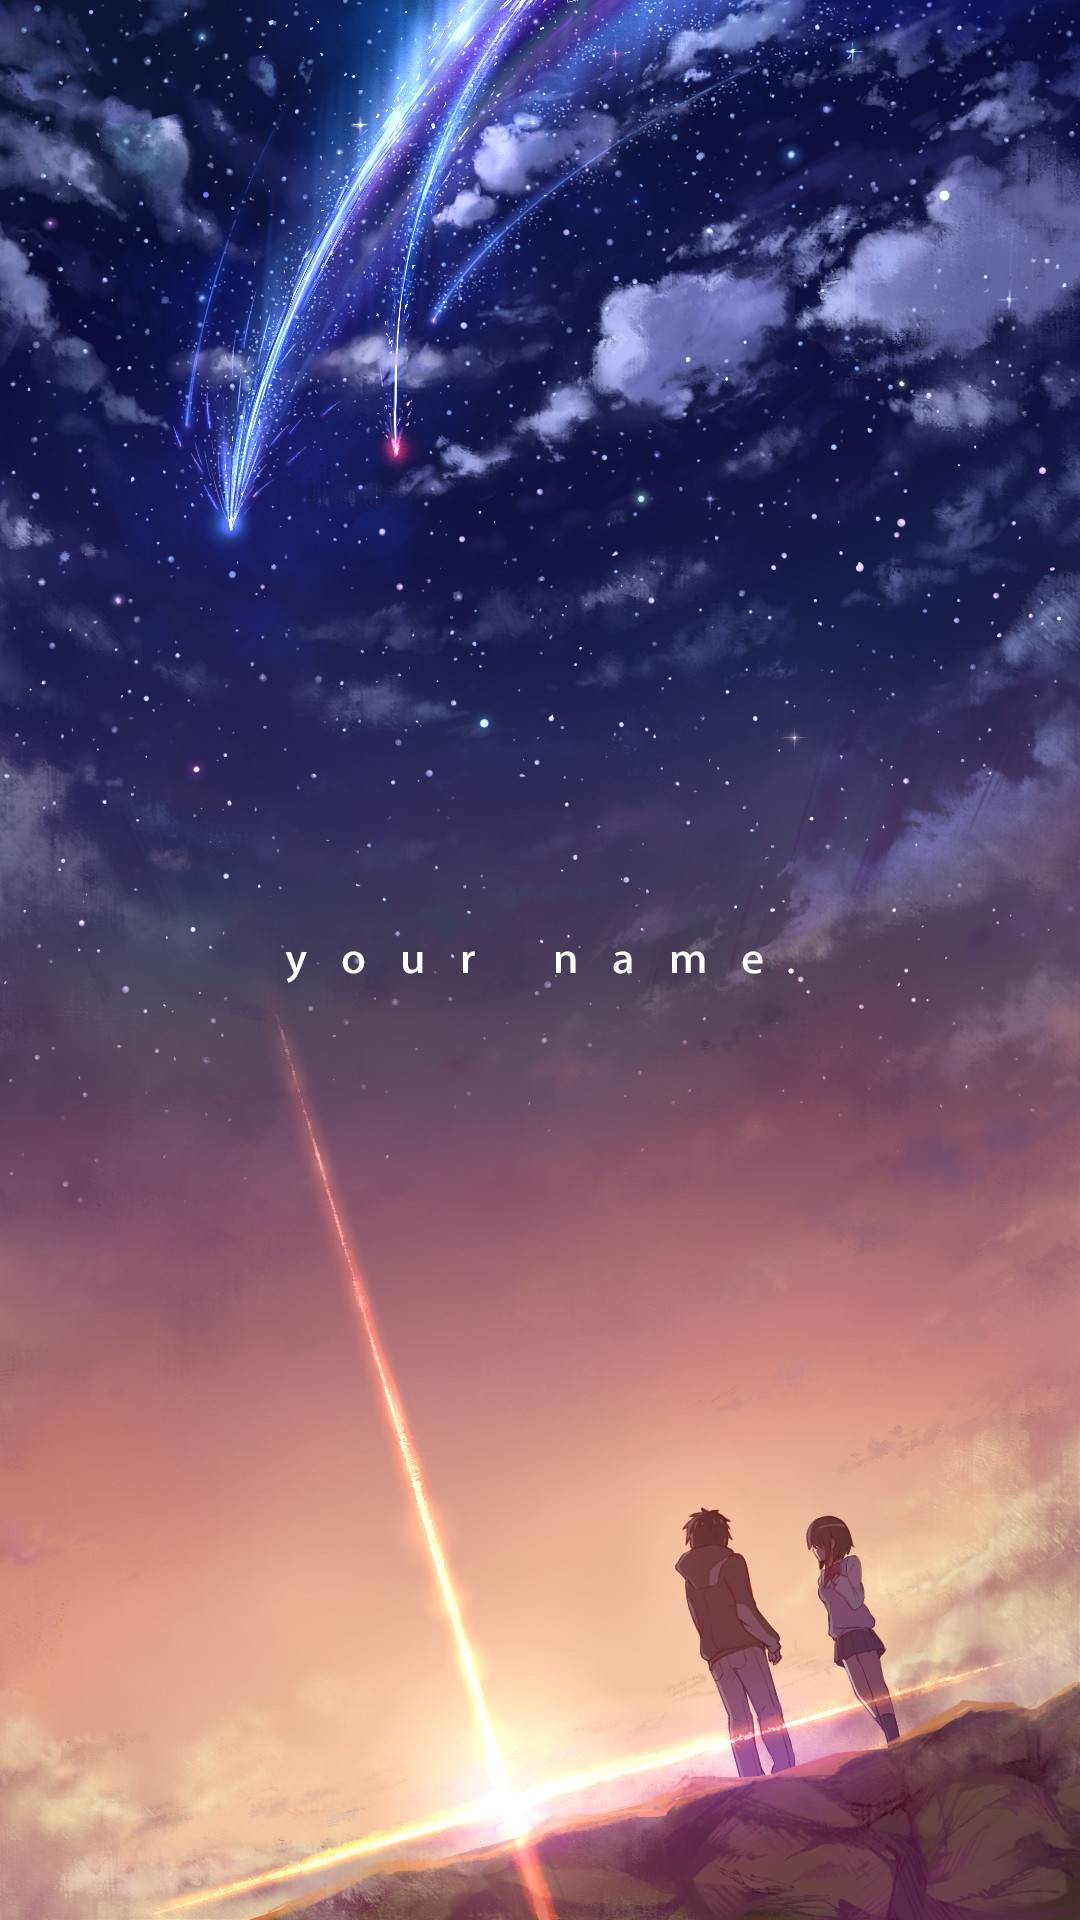 Your Name / Kimi no na wa 1080×1920